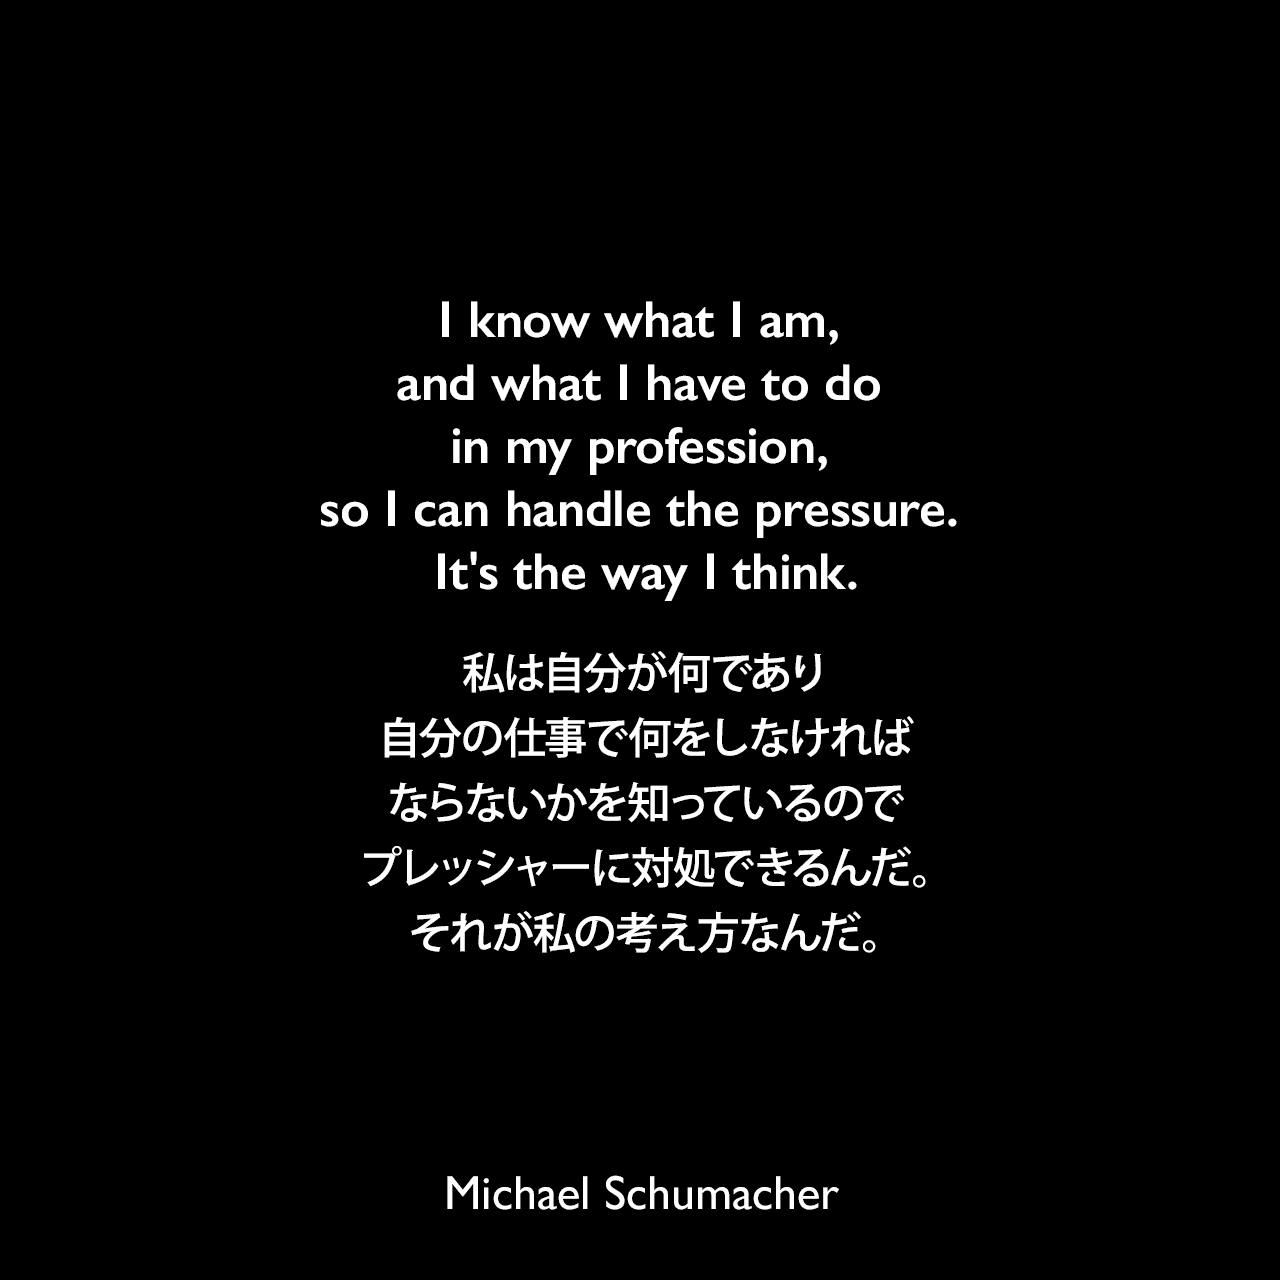 I know what I am, and what I have to do in my profession, so I can handle the pressure. It's the way I think.私は自分が何であり、自分の仕事で何をしなければならないかを知っているので、プレッシャーに対処できるんだ。それが私の考え方なんだ。Michael Schumacher